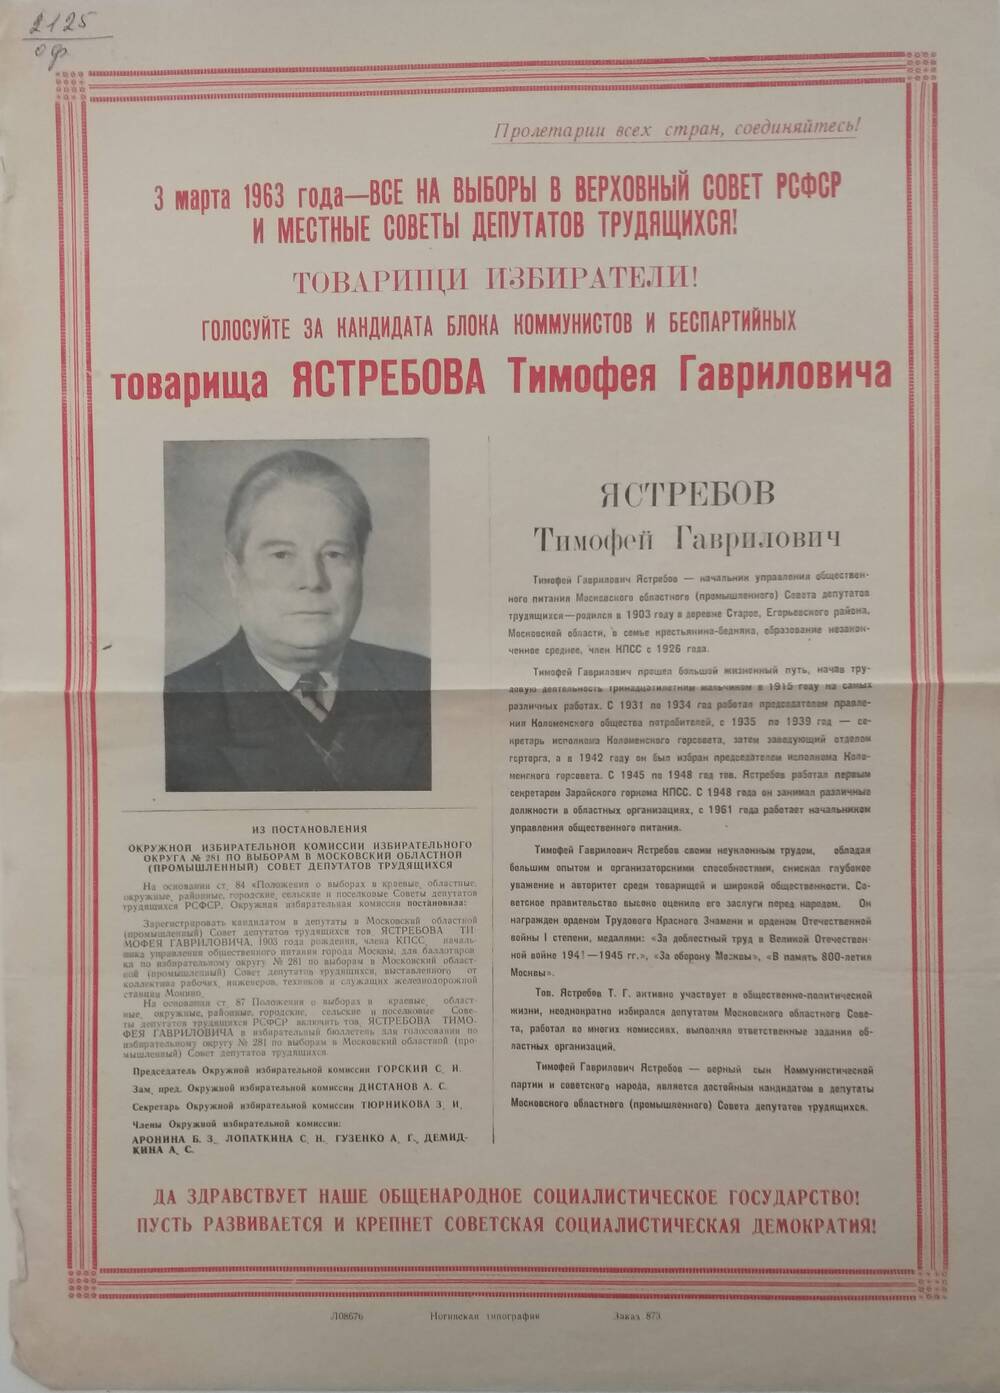 Плакат Призыв к голосованию на выборах 3 марта 1963 года за товарища Ястребова Тимофея Гавриловича - начальника управления общественного питания Московской области, 1963 год.